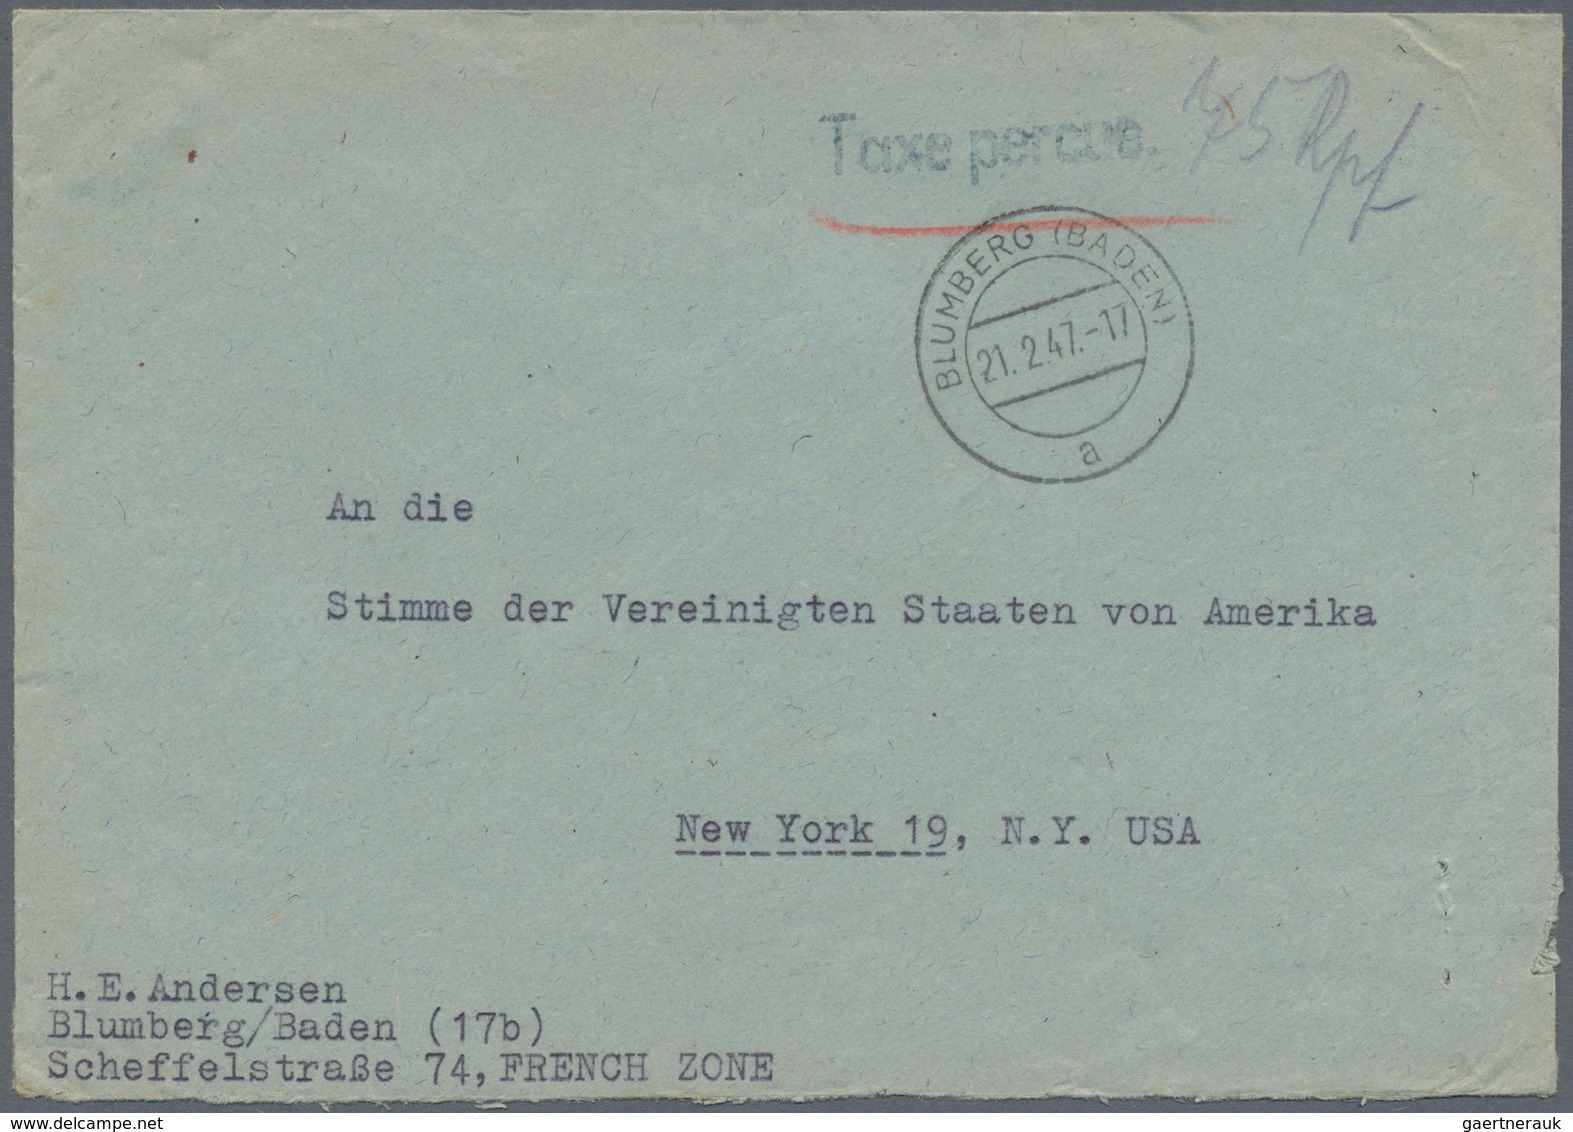 Alliierte Besetzung - Gebühr Bezahlt: 1945/1949, Baden Plz 17a/b, saubere Partie von ca. 160 Gebühr